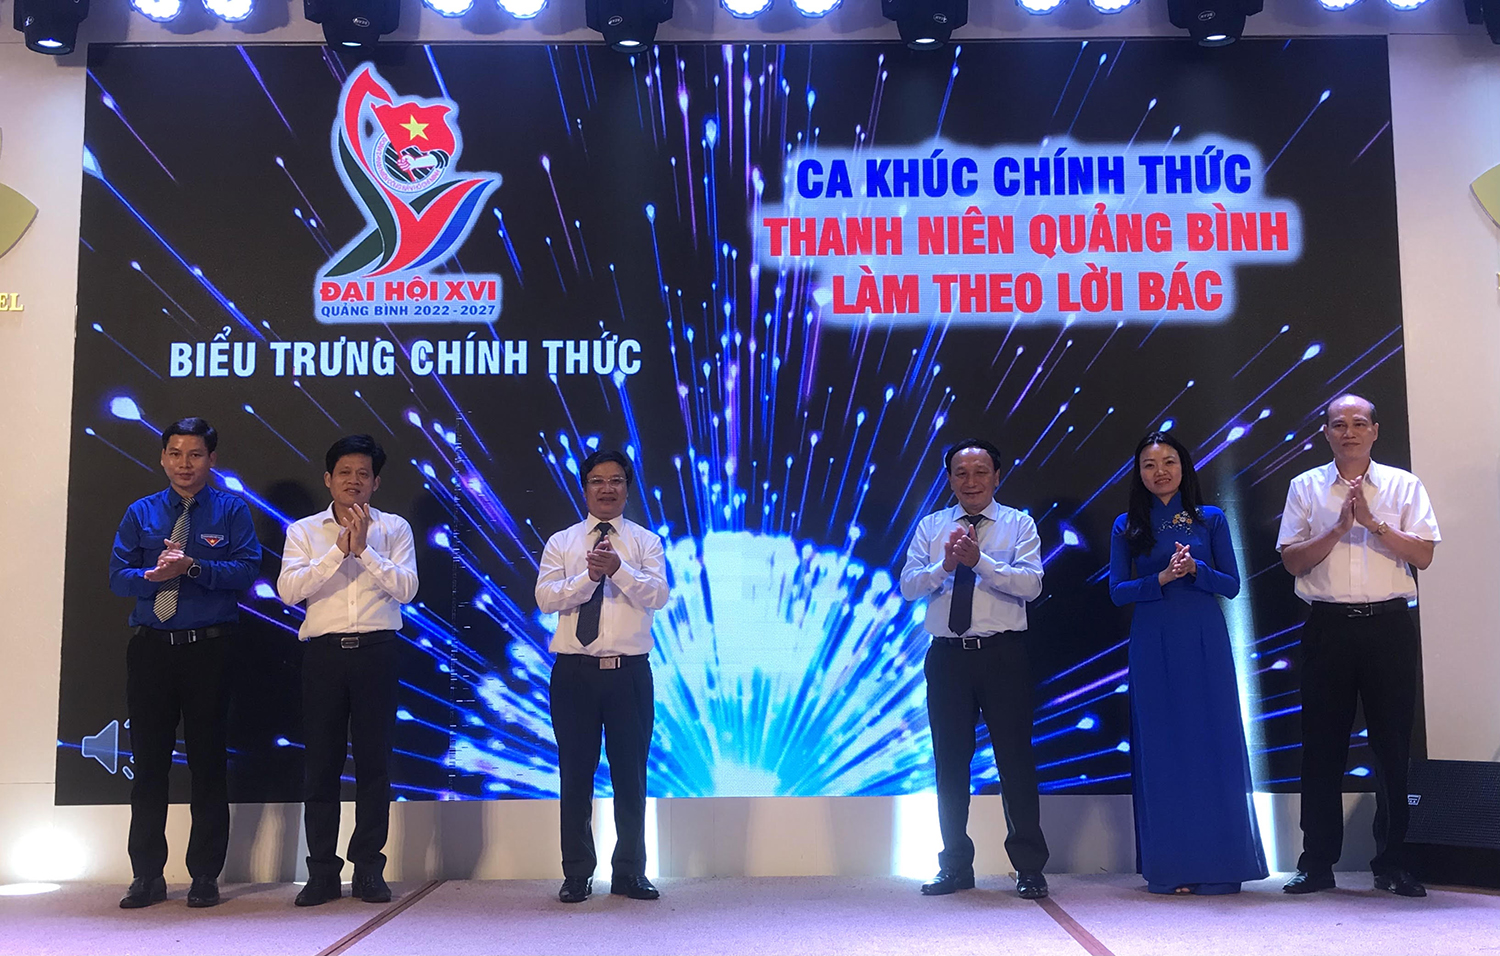 Công bố bài hát và biểu trưng chính thức Đại hội đại biểu Đoàn TNCS Hồ Chí Minh tỉnh Quảng Bình